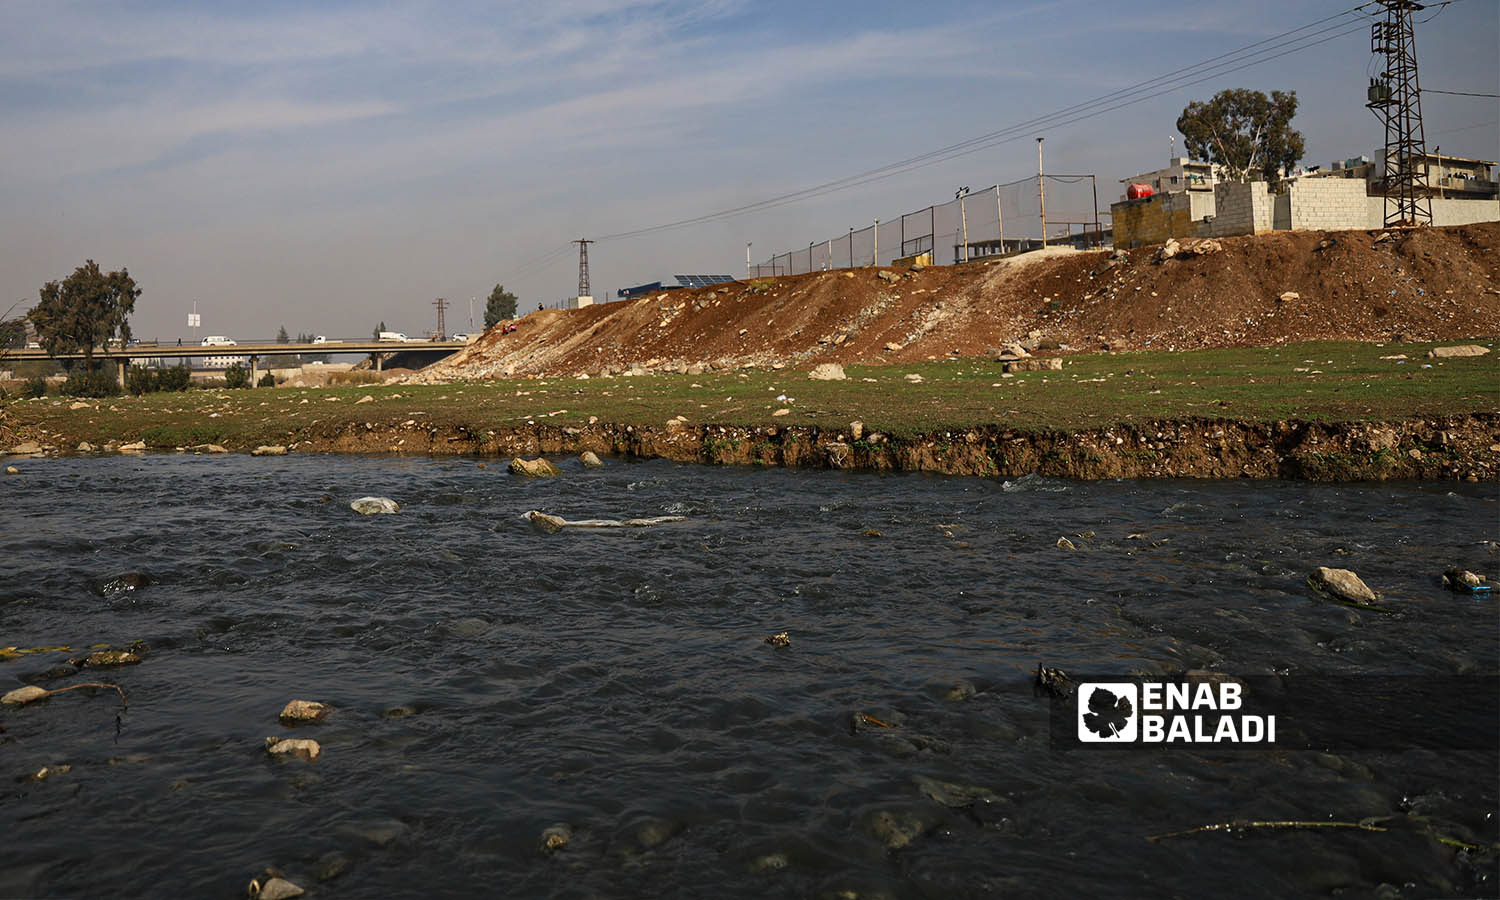 تلوث مياه نهر عفرين نتيجة  تحويل مياه الصرف الصحي عليه و إلقاء مخلّفات معامل الألبسة داخل النهر وسط مدينة عفرين- 12 من كانون الأول 2022 (عنب بلدي/ أمير خربطلي)